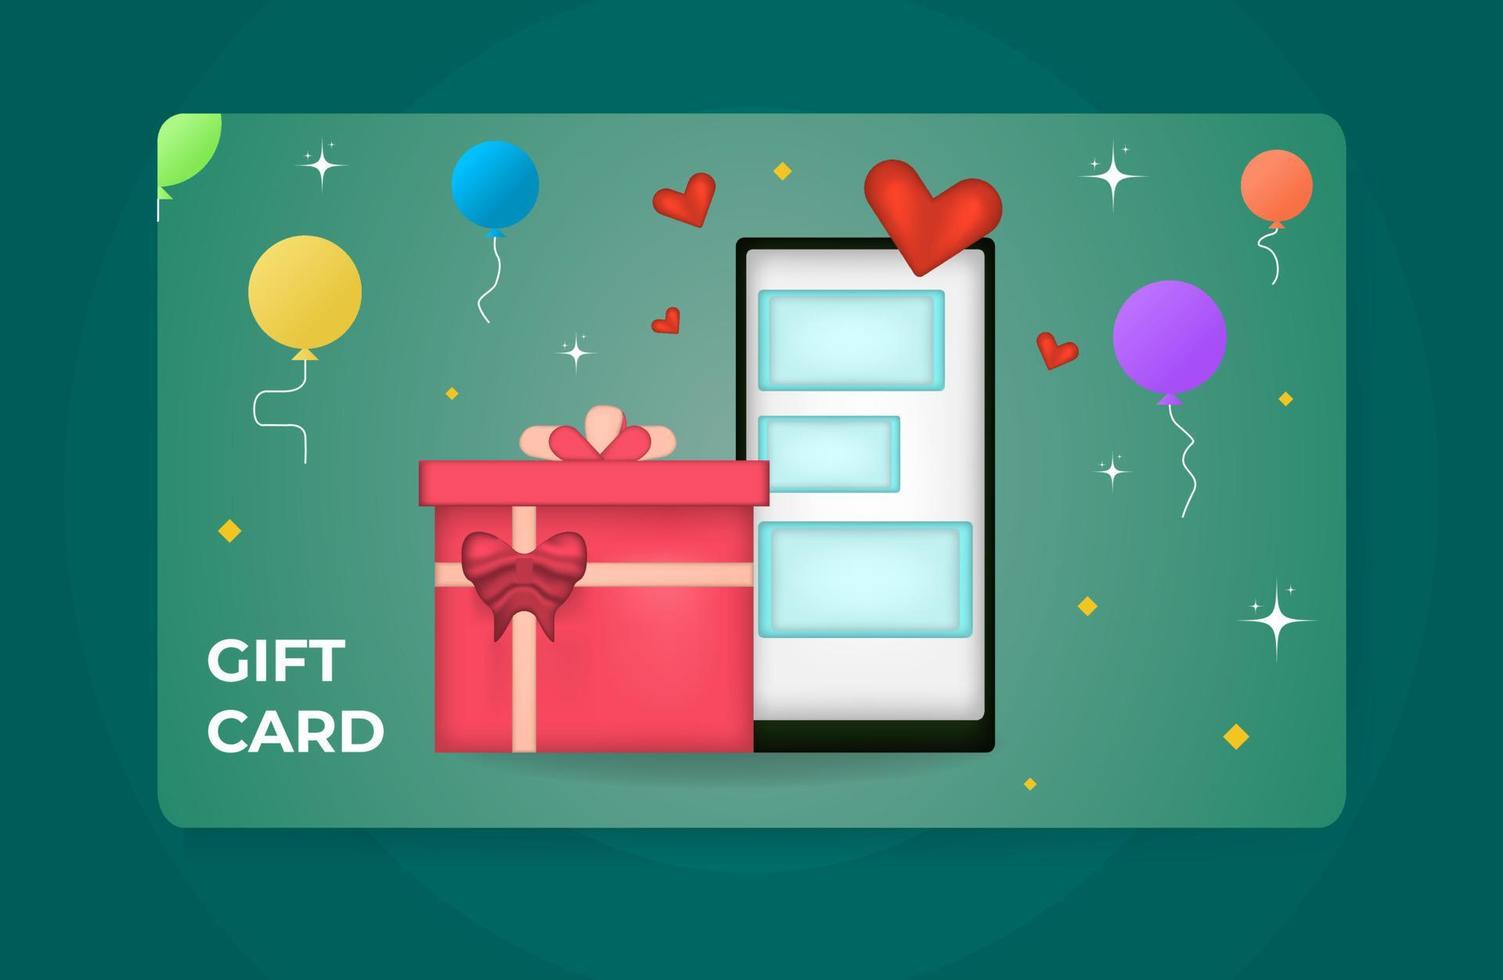 tarjeta de regalo del cliente con ilustración de estilo de presentación 3d, móvil, globos, corazones, estrellas, plantilla limpia y moderna aislada en fondo verde. vector